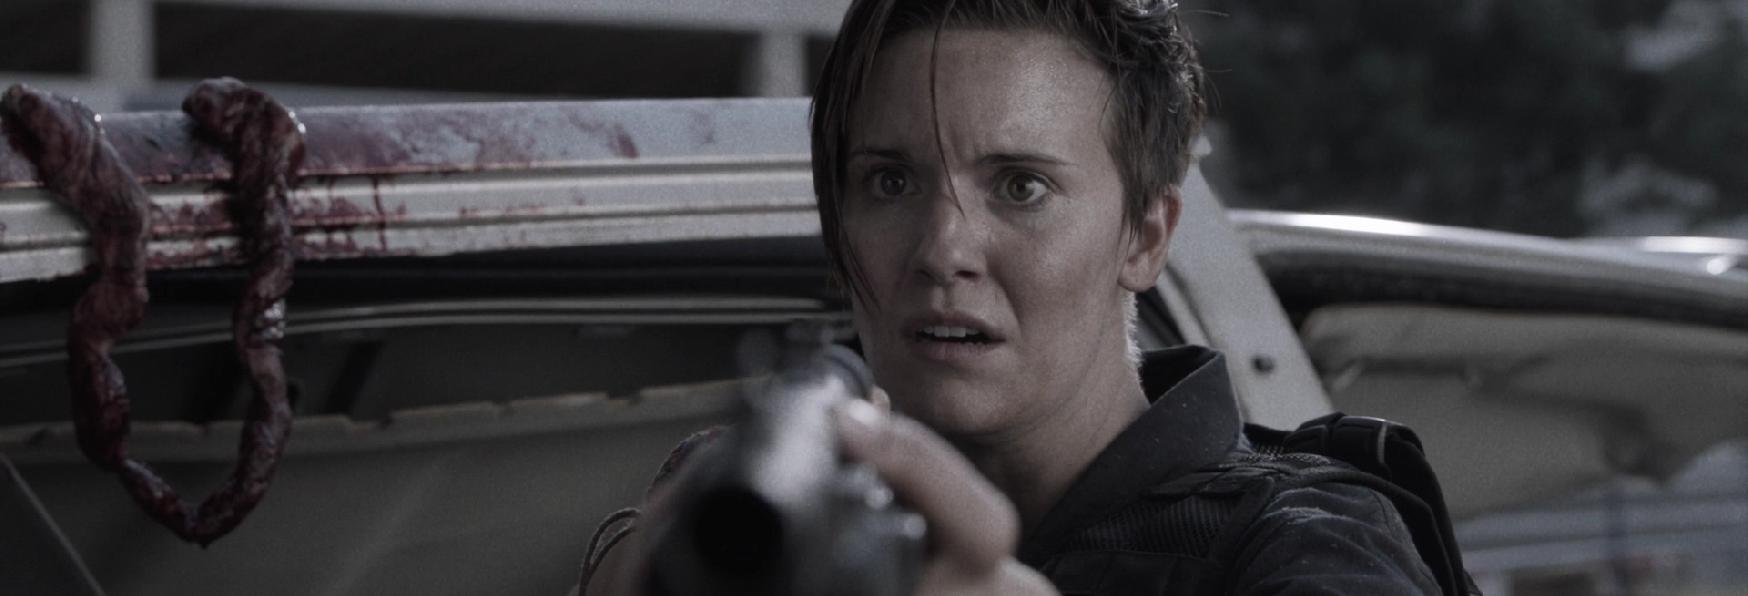 Fear the Walking Dead: Maggie Grace sarà nei Film Spin-off?